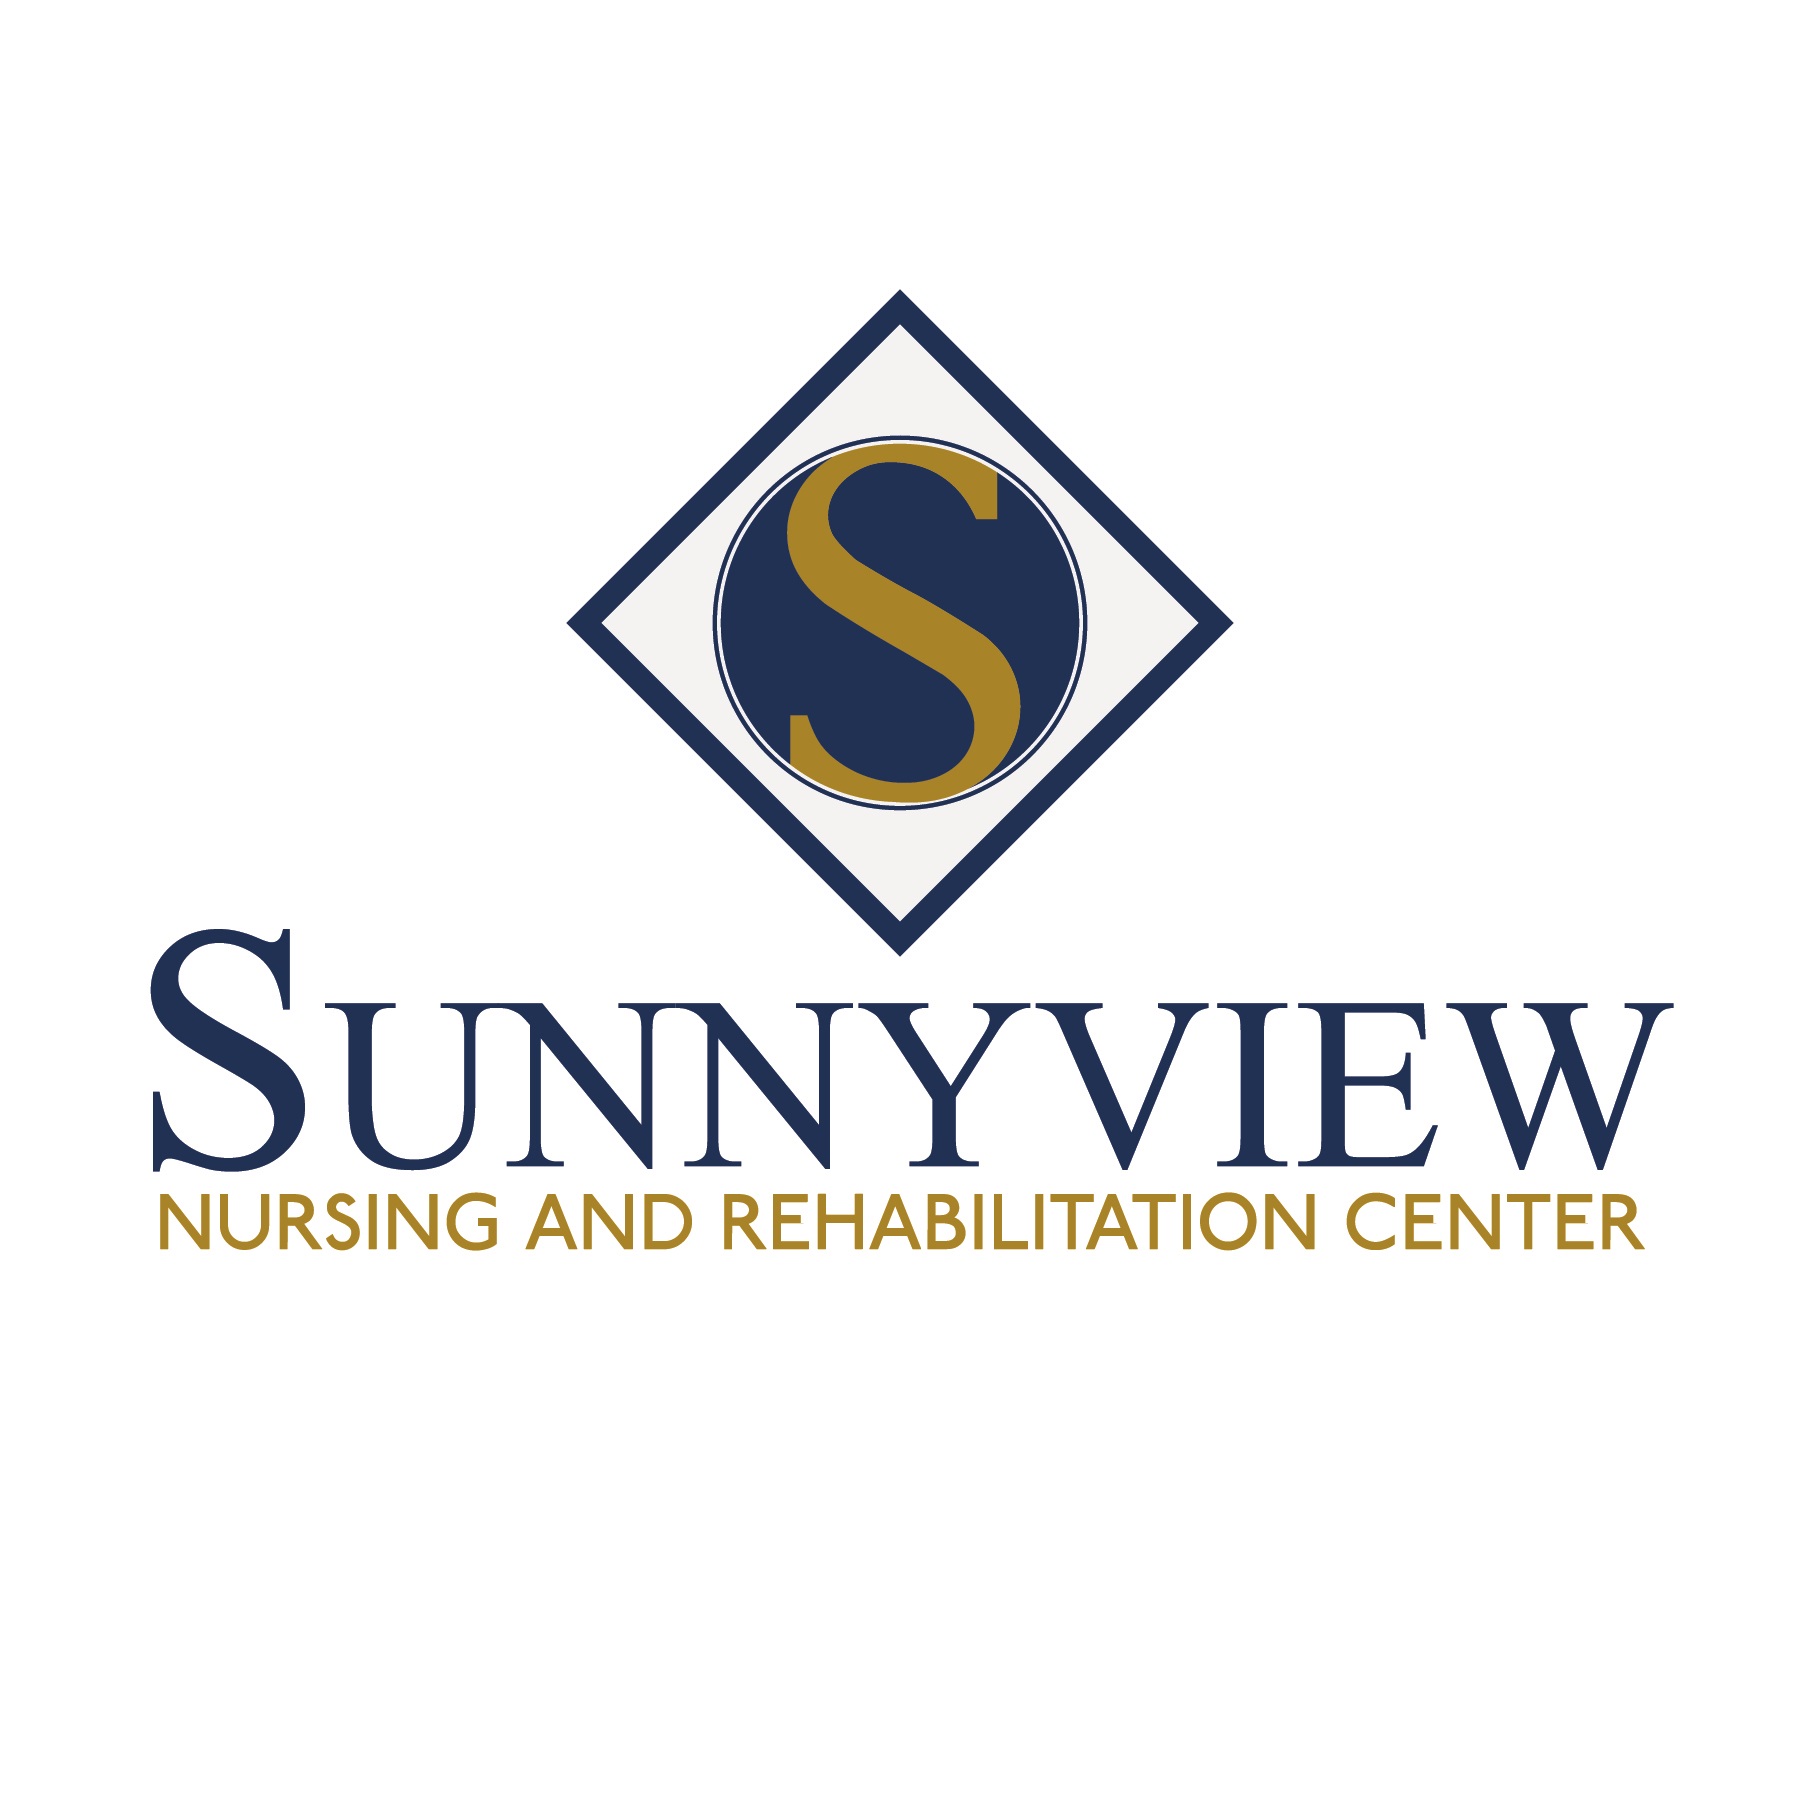 sunnyview expo center september 2015